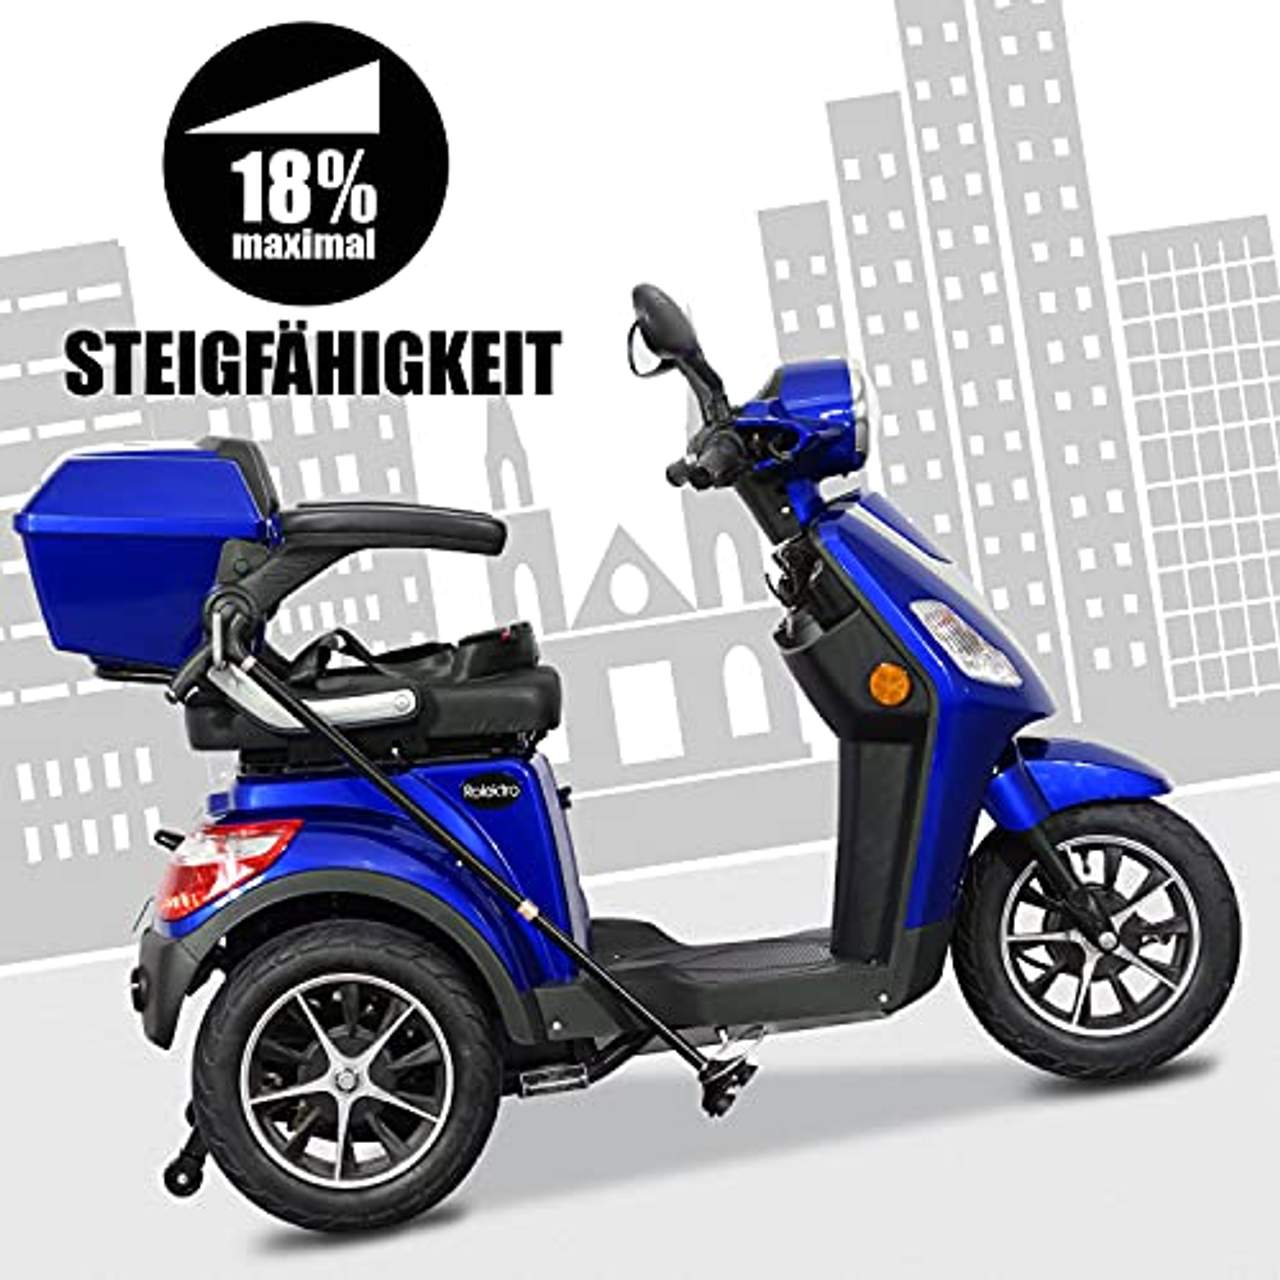 Rolektro E-Trike 25 V.2 Dreirad Blau